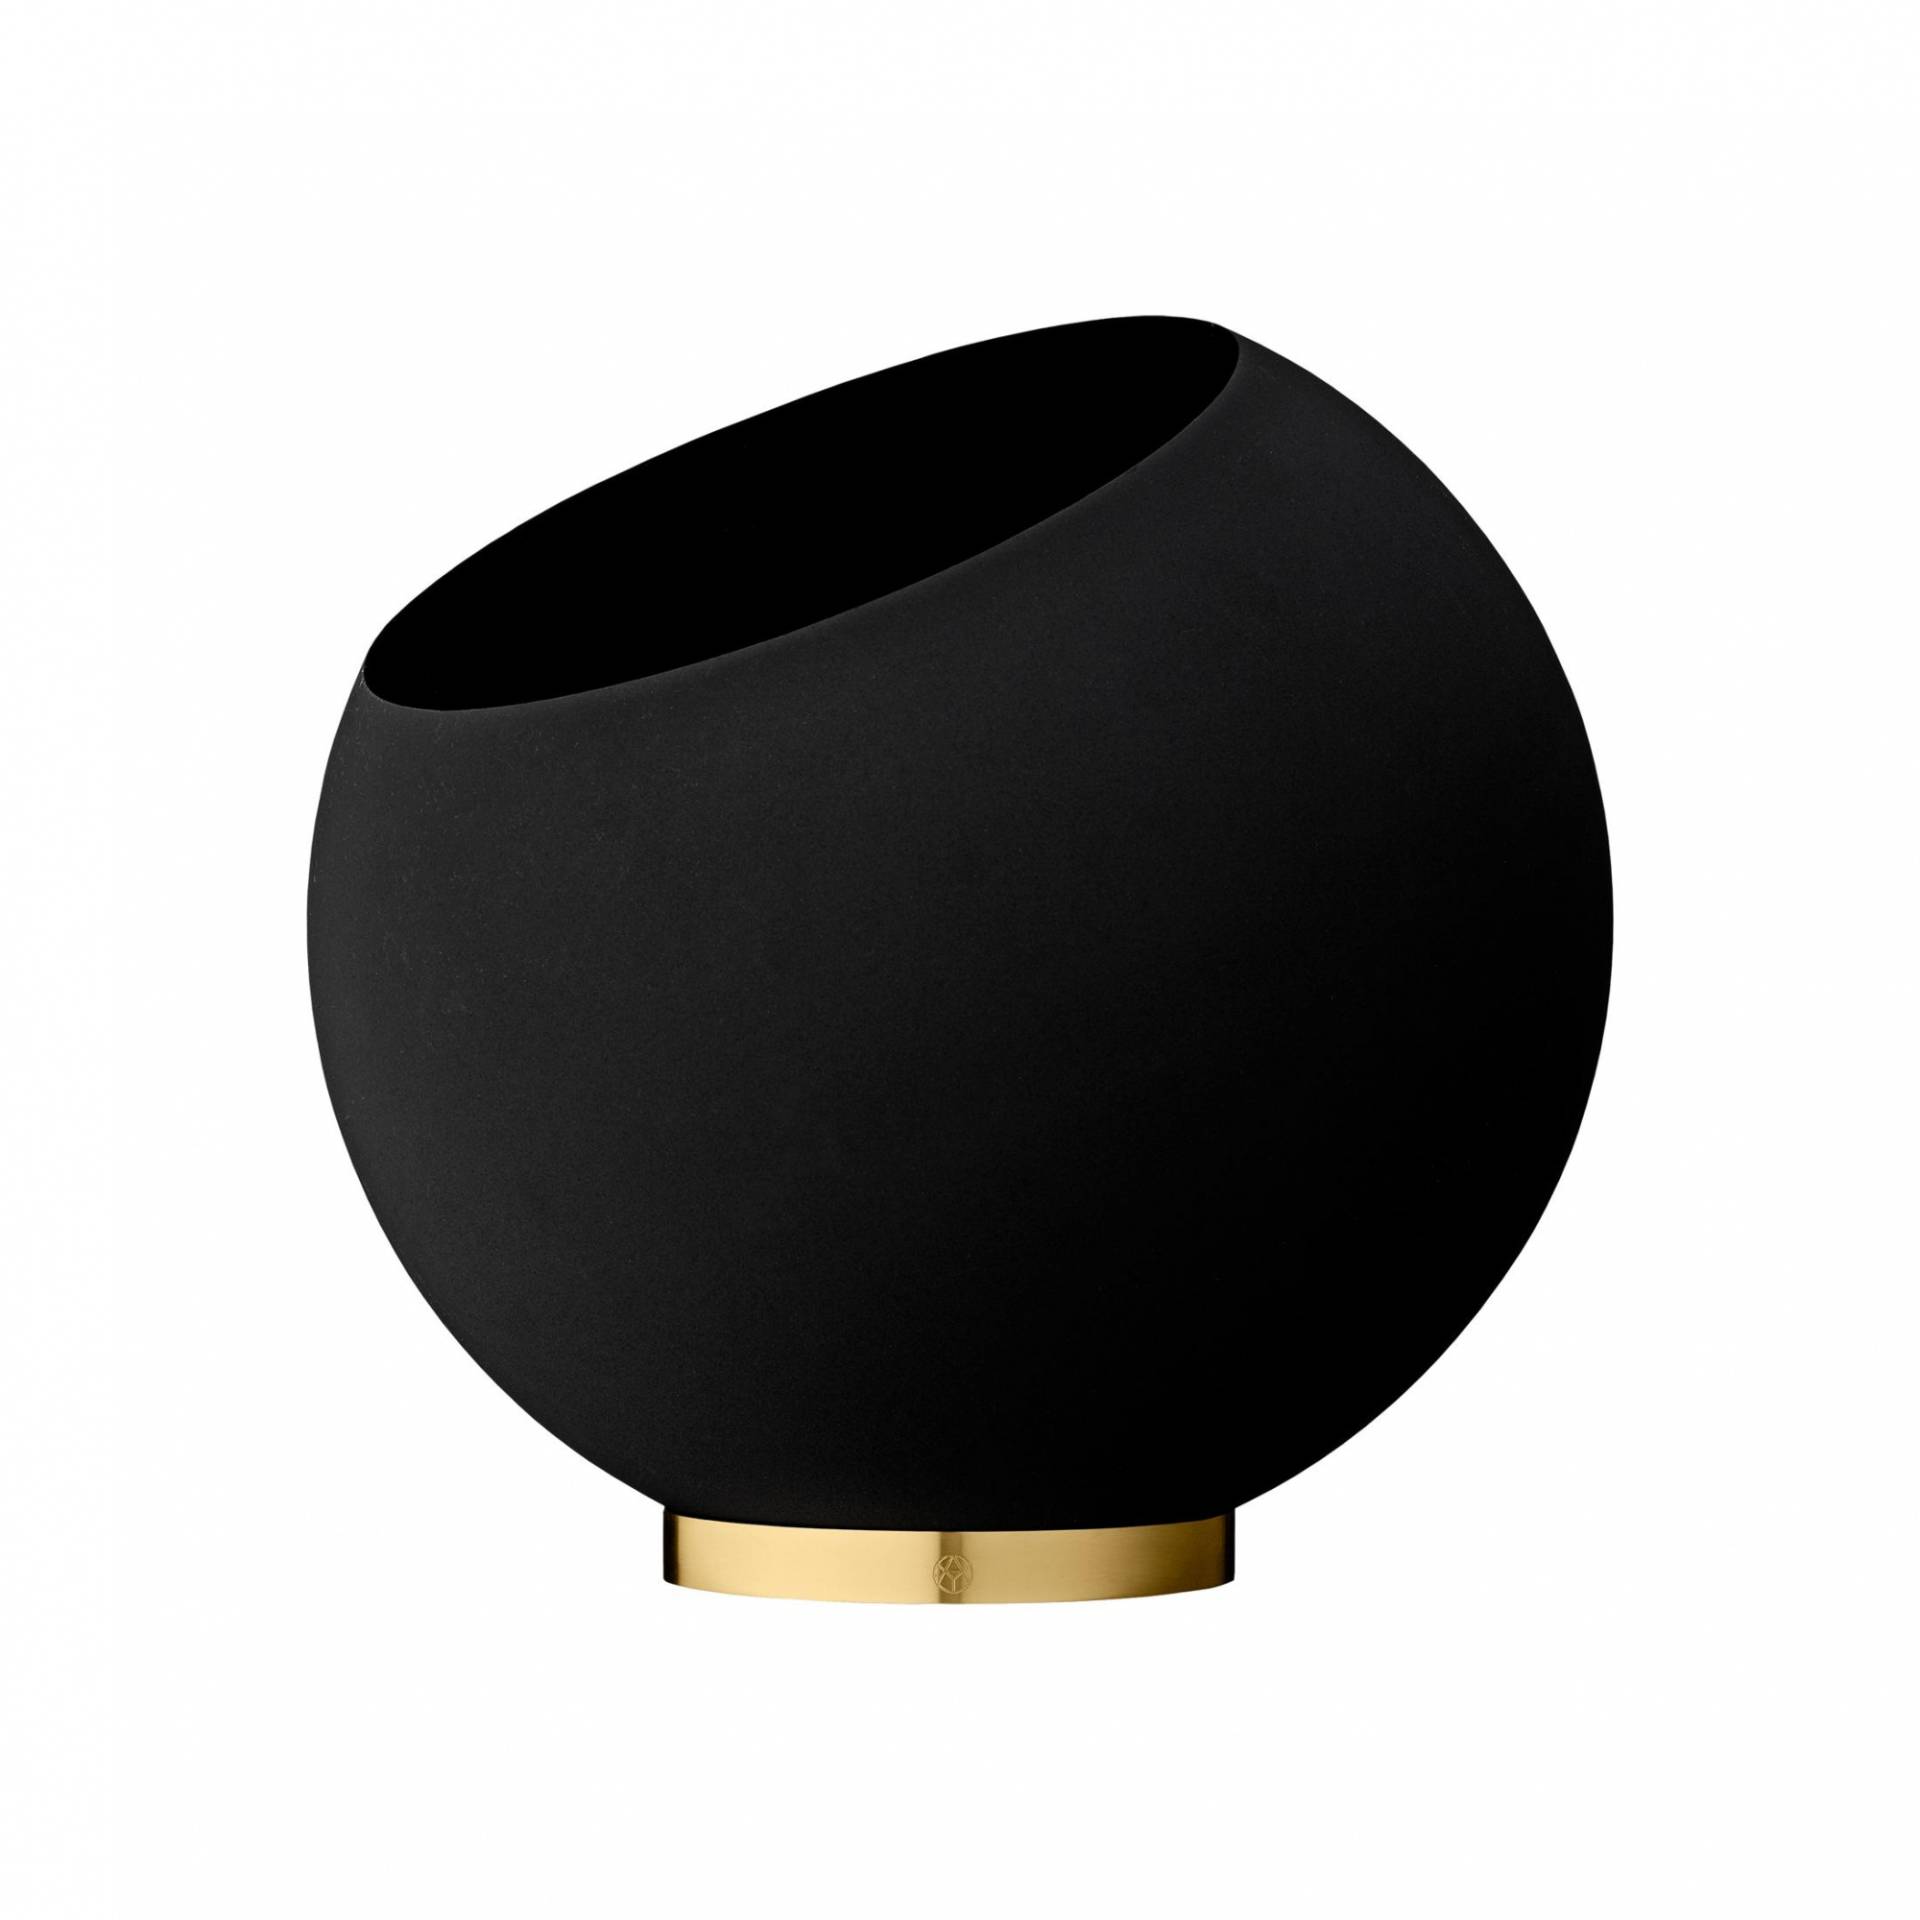 AYTM - Globe Blumentopf Ø 17cm - schwarz/H 15,4cm x Ø 17cm/für Innen- und Außenbereich geeignet von AYTM